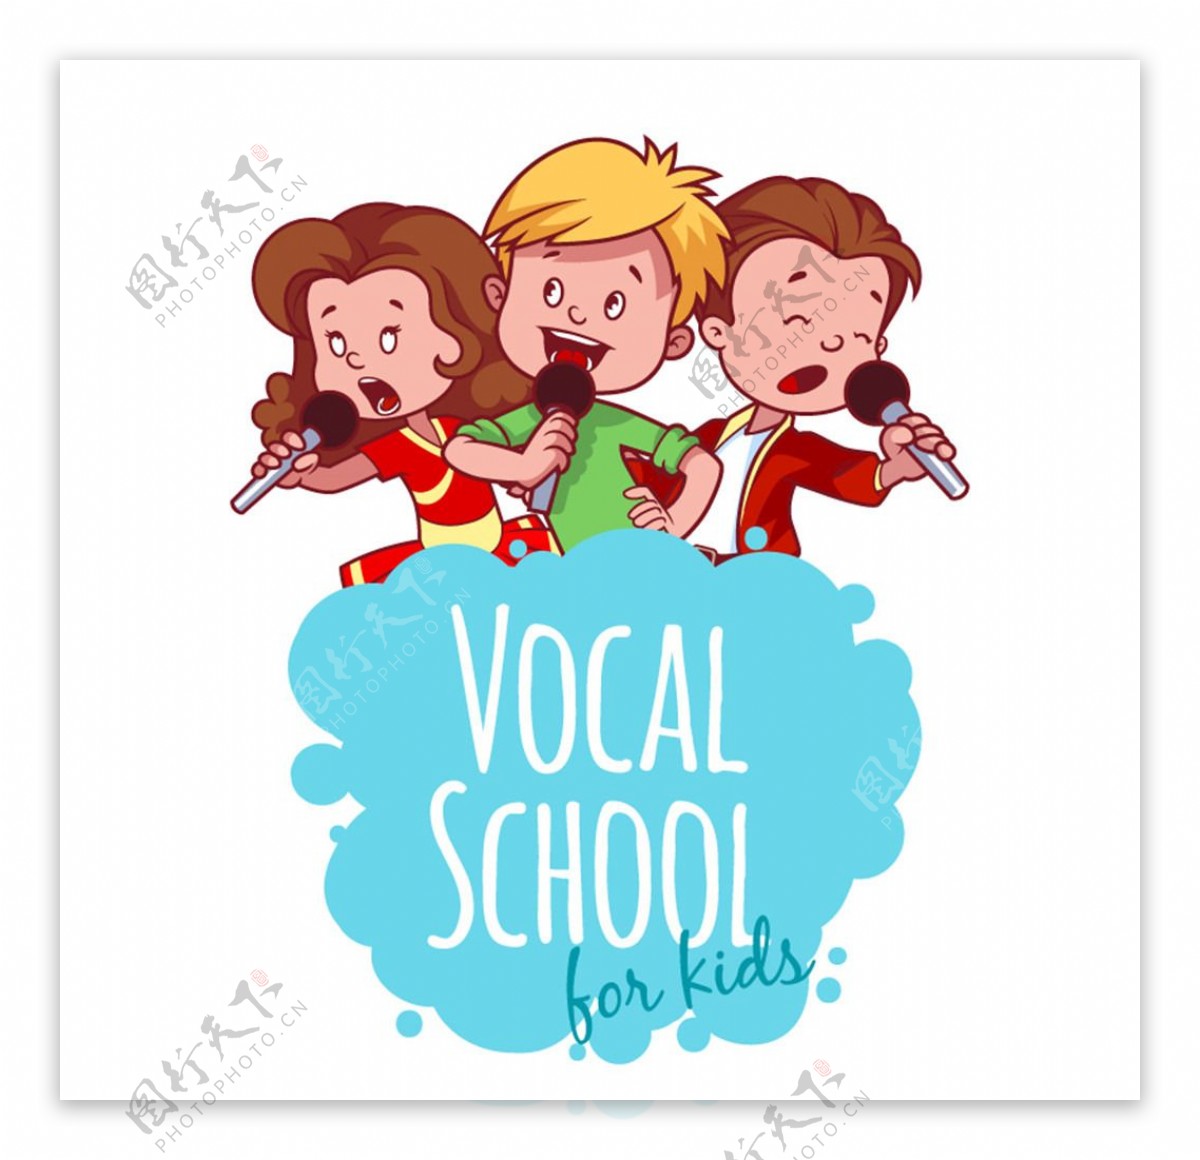 音乐学校唱歌的孩子矢量素材